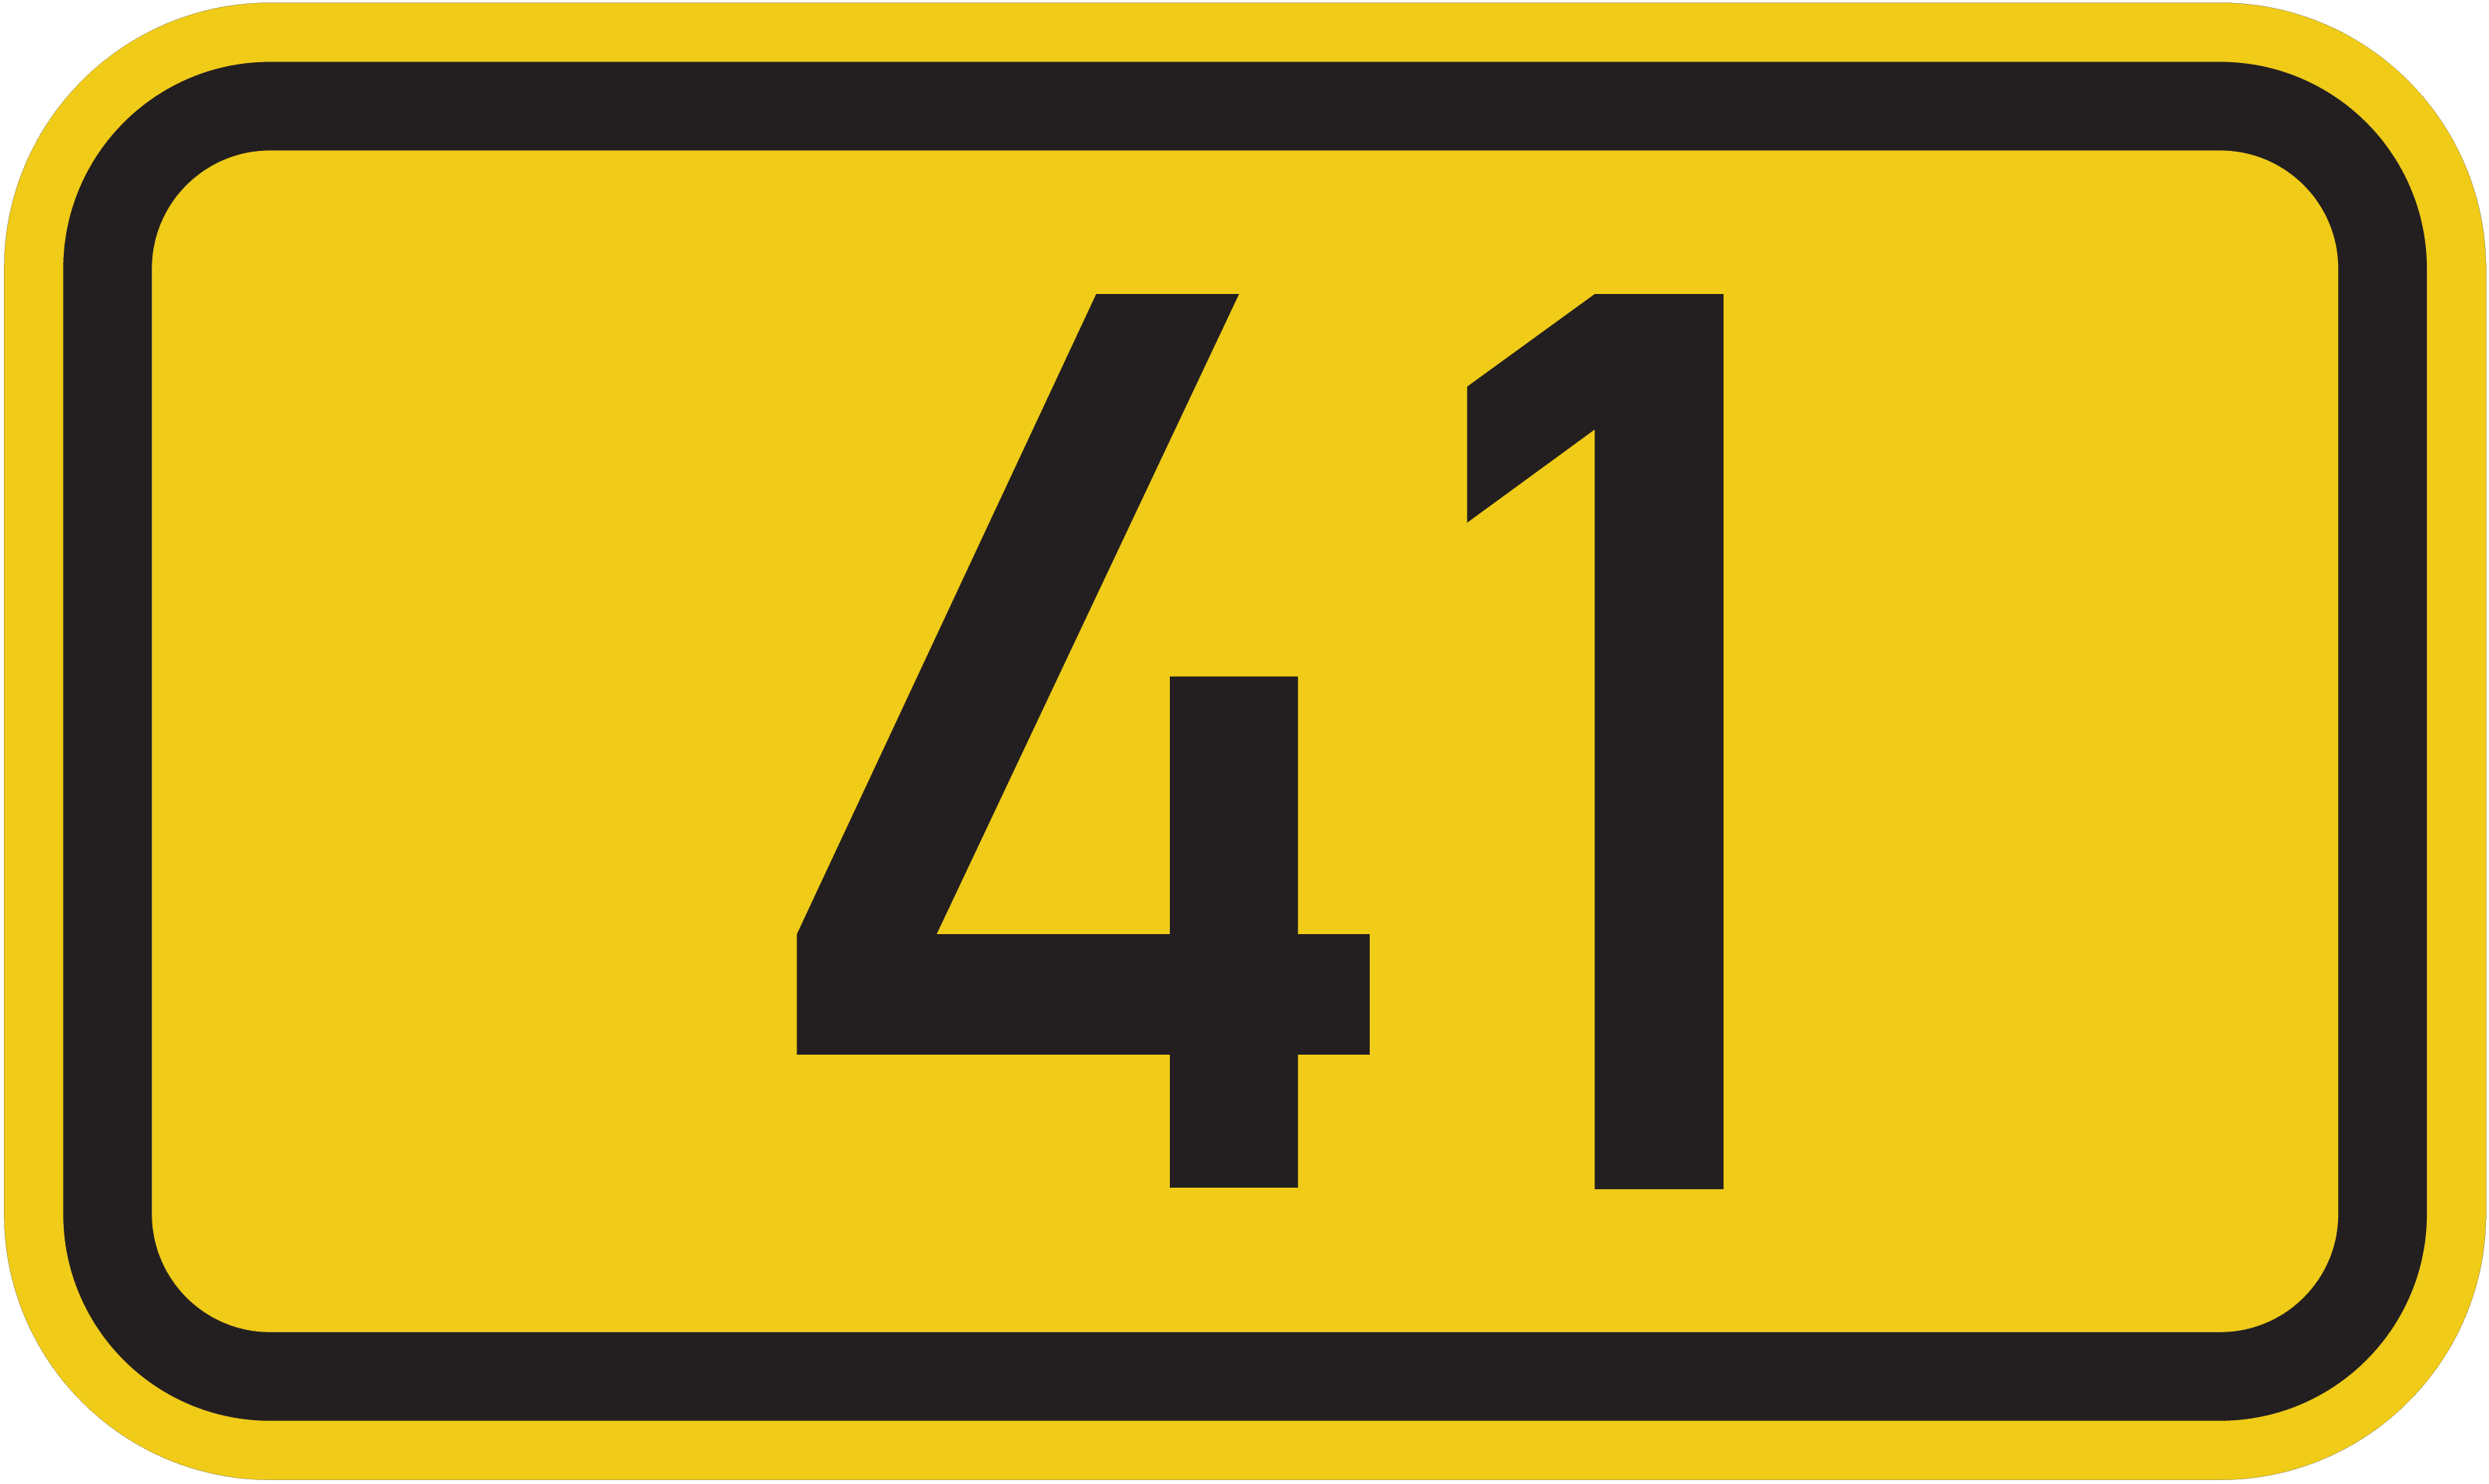 Bundesstraße B 41